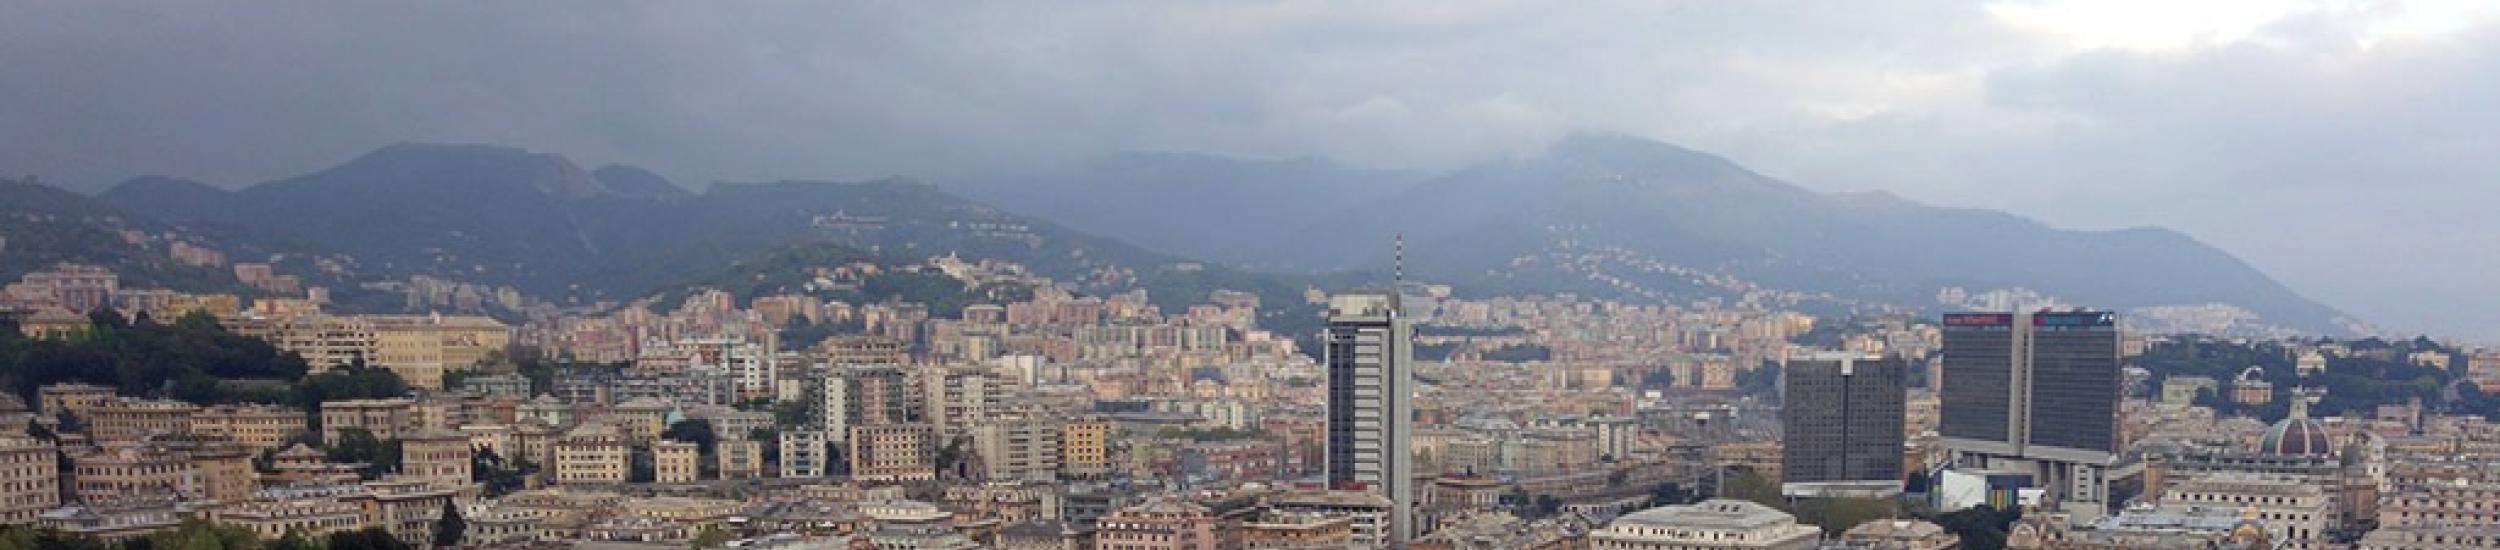 Aria: ieri (20/04/2015) inquinamento nei limiti nella città metropolitana di genova (news del 2015-04-30 11:04:00)